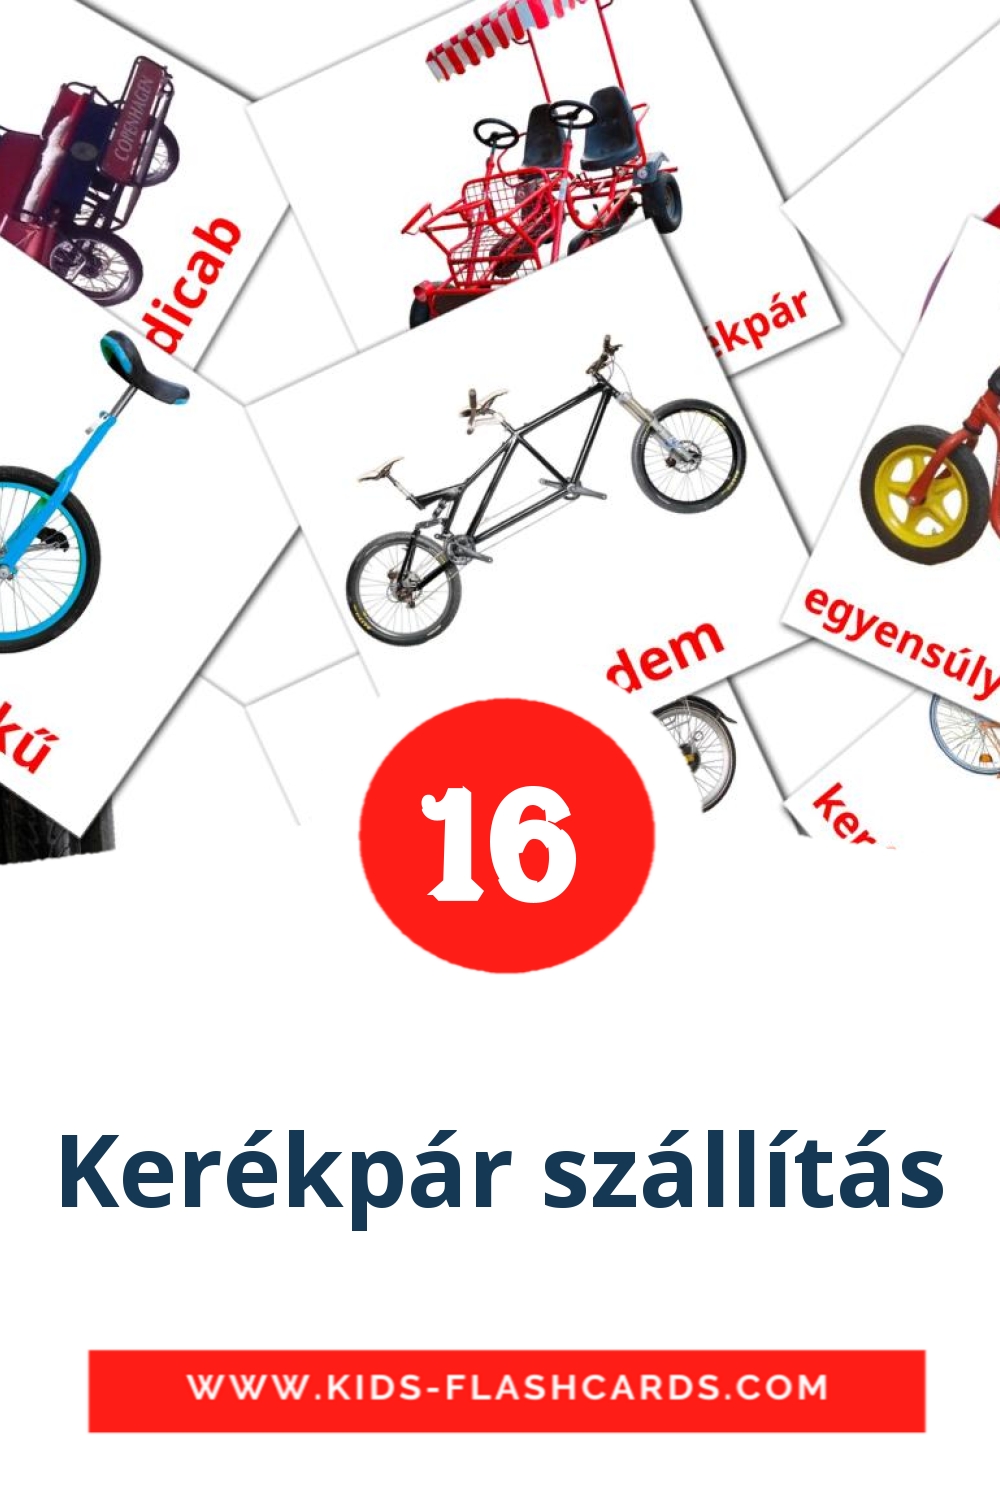 Kerékpár szállítás на венгерском для Детского Сада (16 карточек)